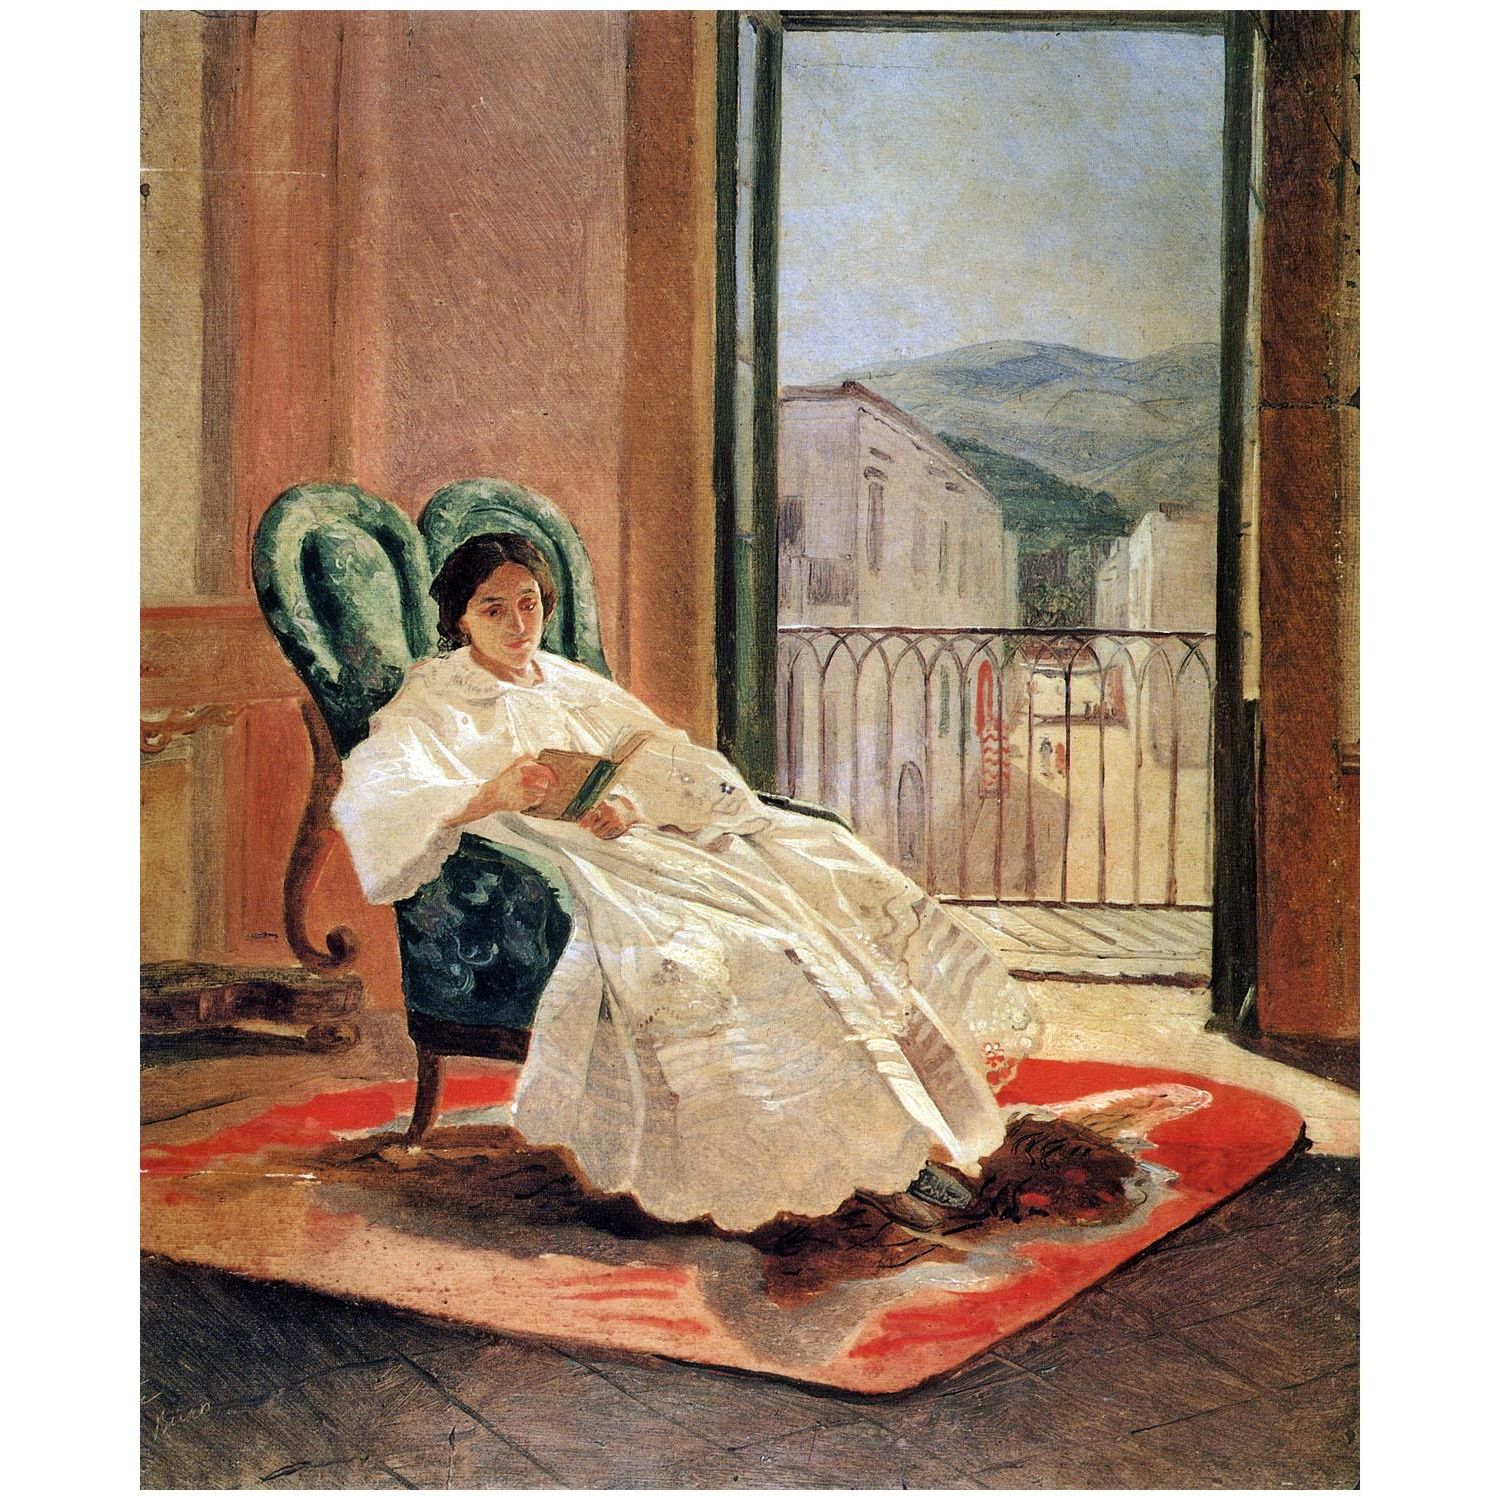 Николай Ге. Анна Петровна Ге. 1858. Киевская картинная галерея